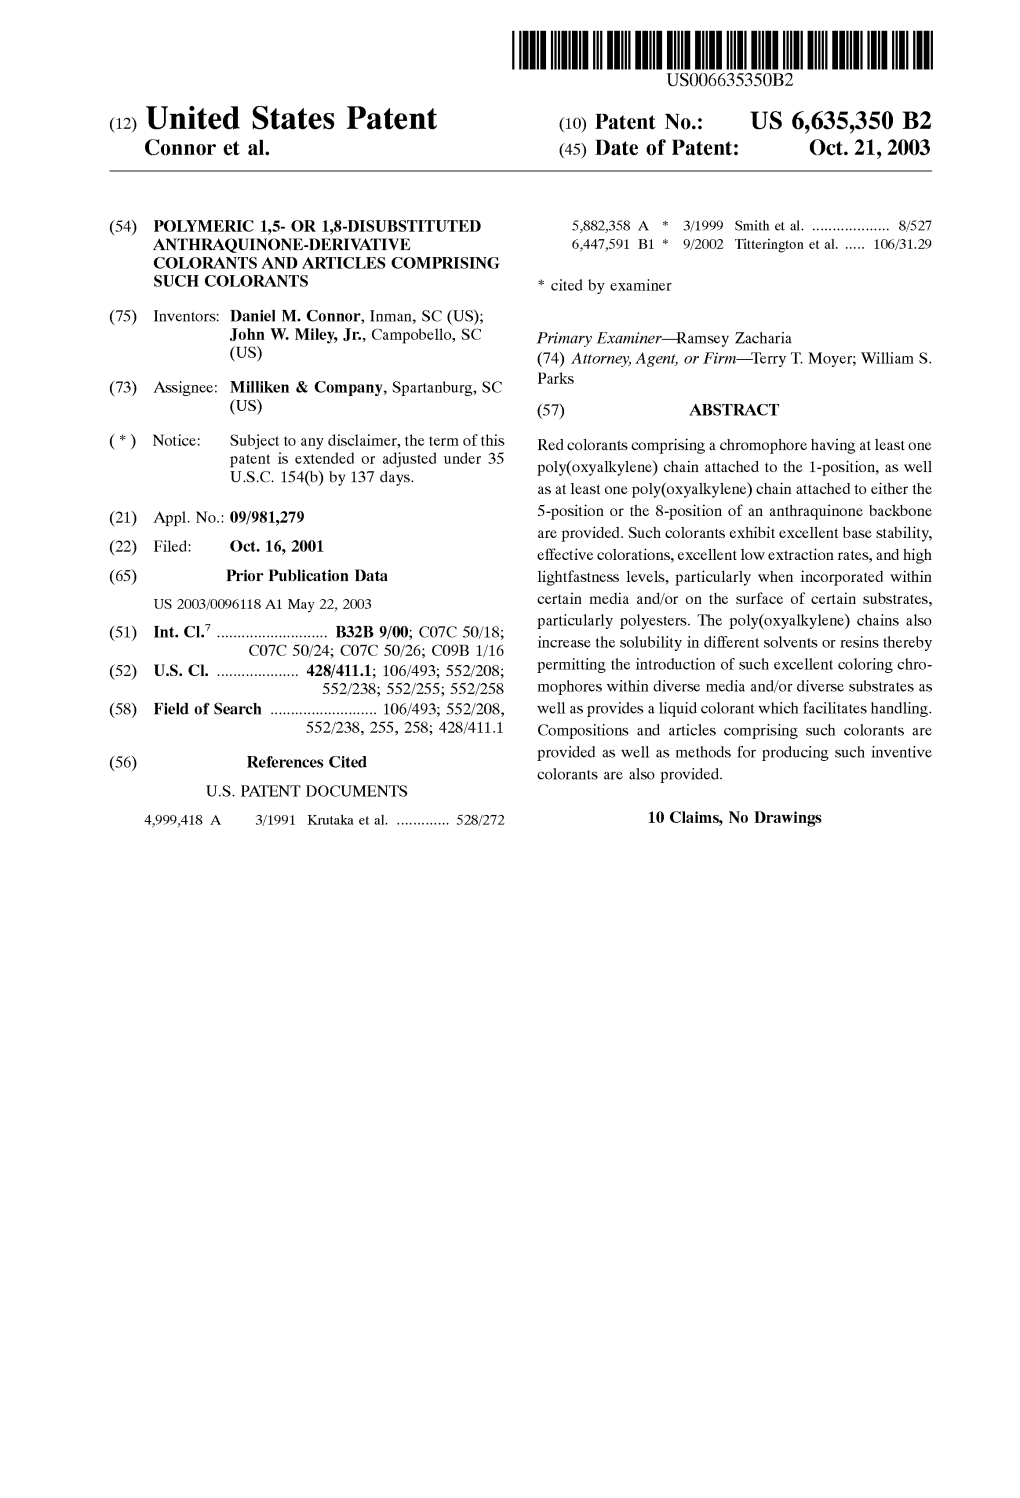 (12) United States Patent (10) Patent No.: US 6,635,350 B2 Connor Et Al